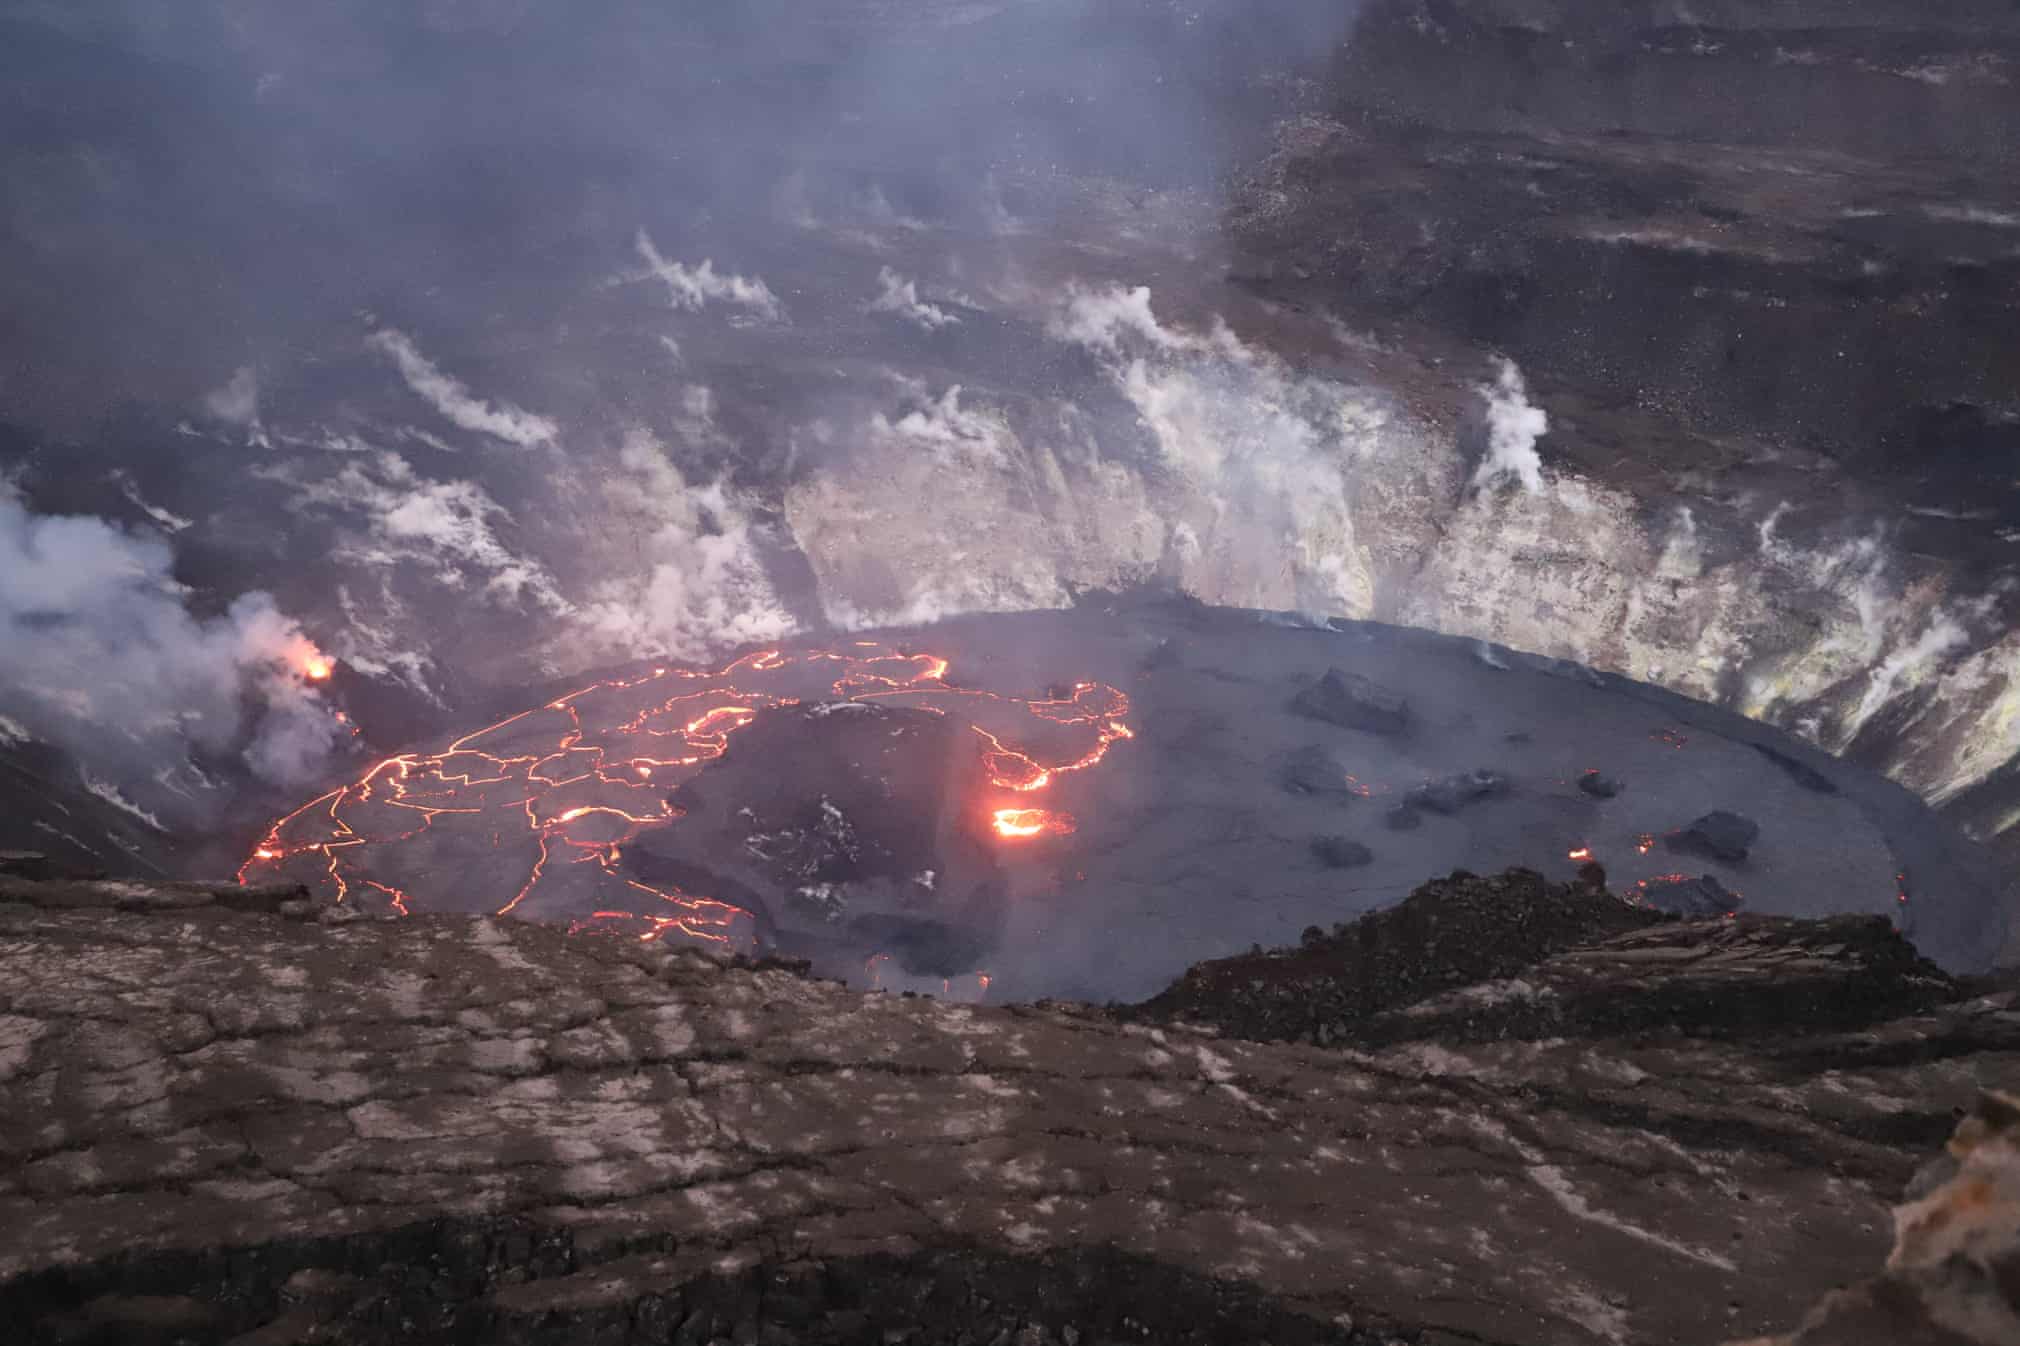 AQShning Gavayi orollaridagi Kilauea cho‘qqisida joylashgan Halemauma vulqon og‘zida hamon lava qaynab chiqmoqda.